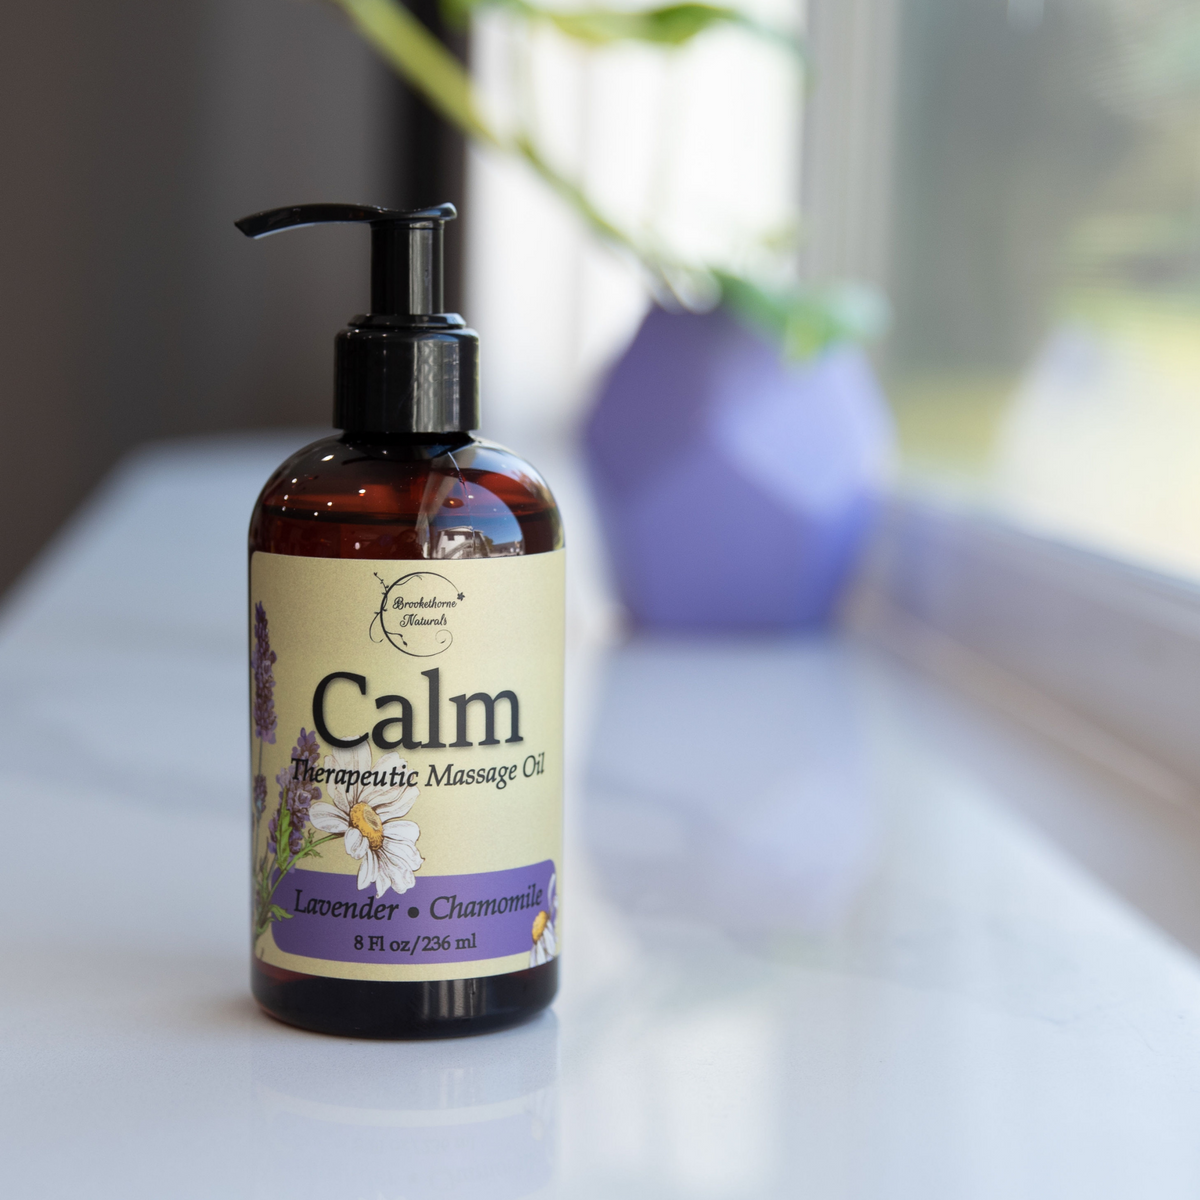 Calm Therapeutic Massage Oil on a window sill. 